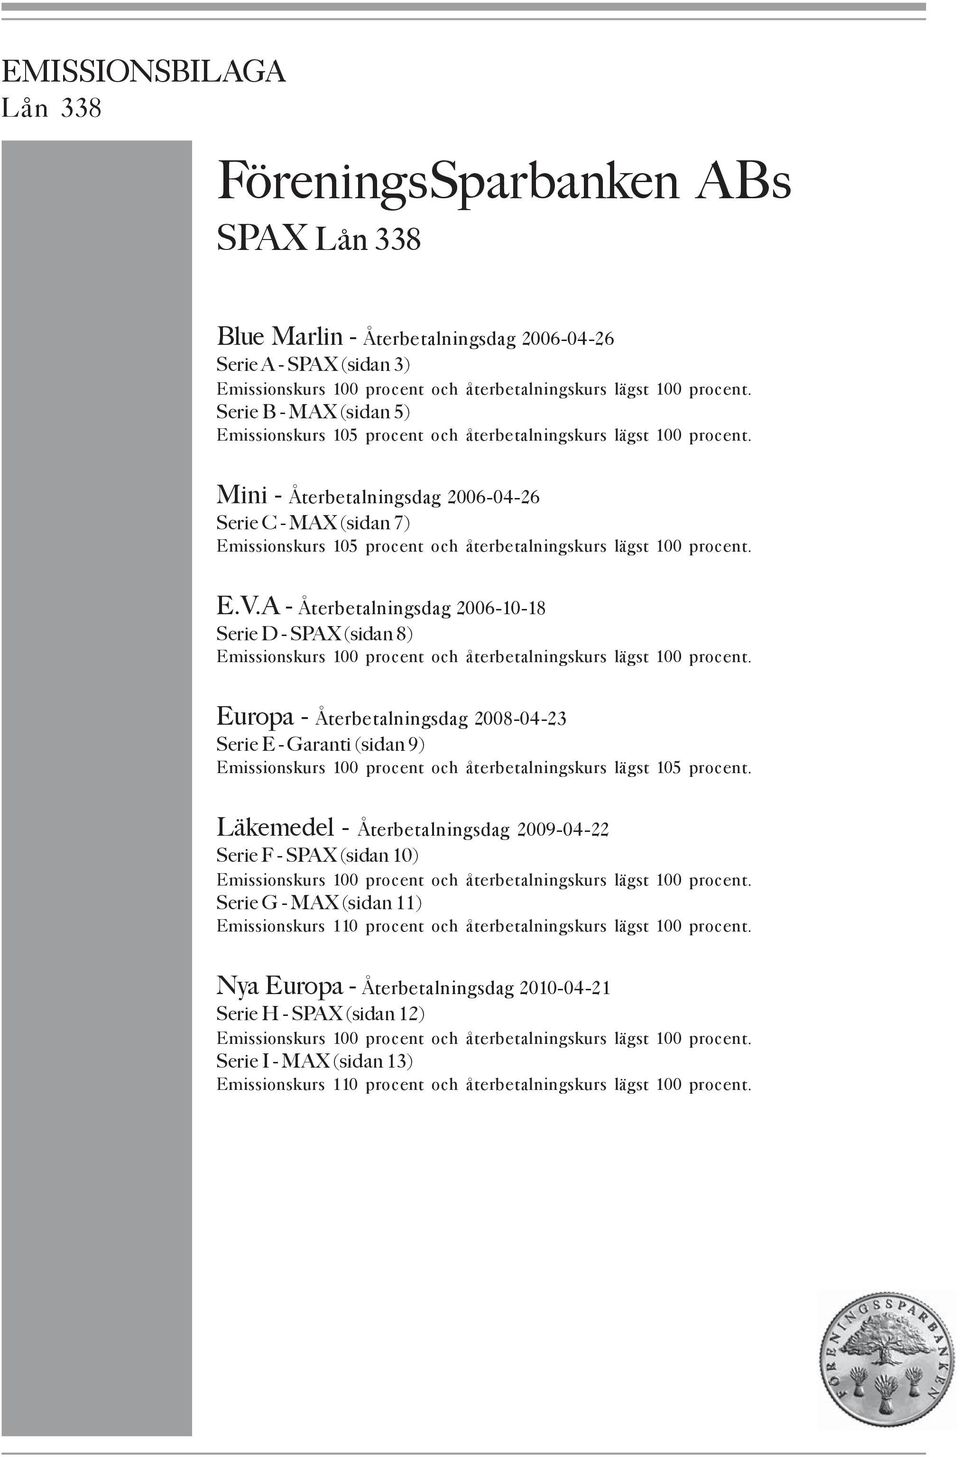 Mini - Återbetalningsdag 2006-04-26 Serie C - MAX (sidan 7) Emissionskurs 105 procent och återbetalningskurs lägst 100 procent. E.V.